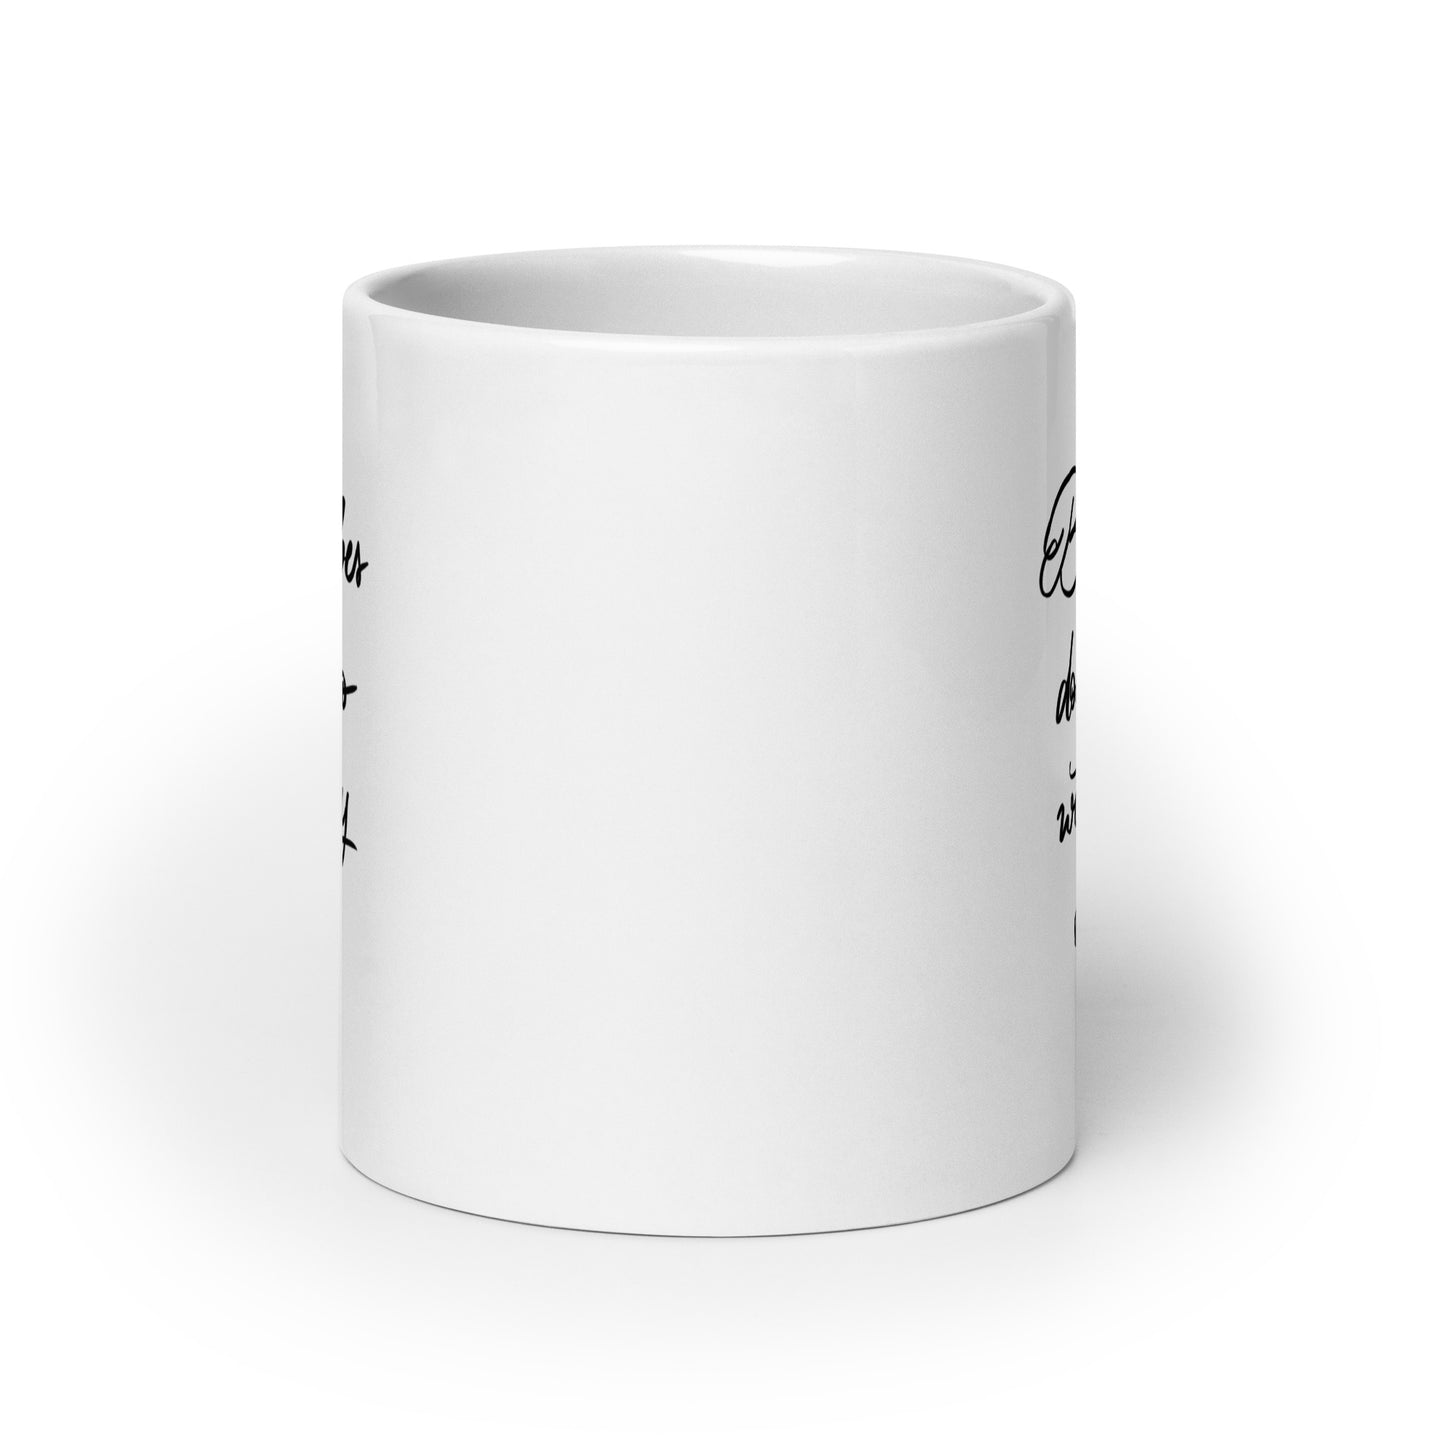 Ceramic mug "Bad vibes"